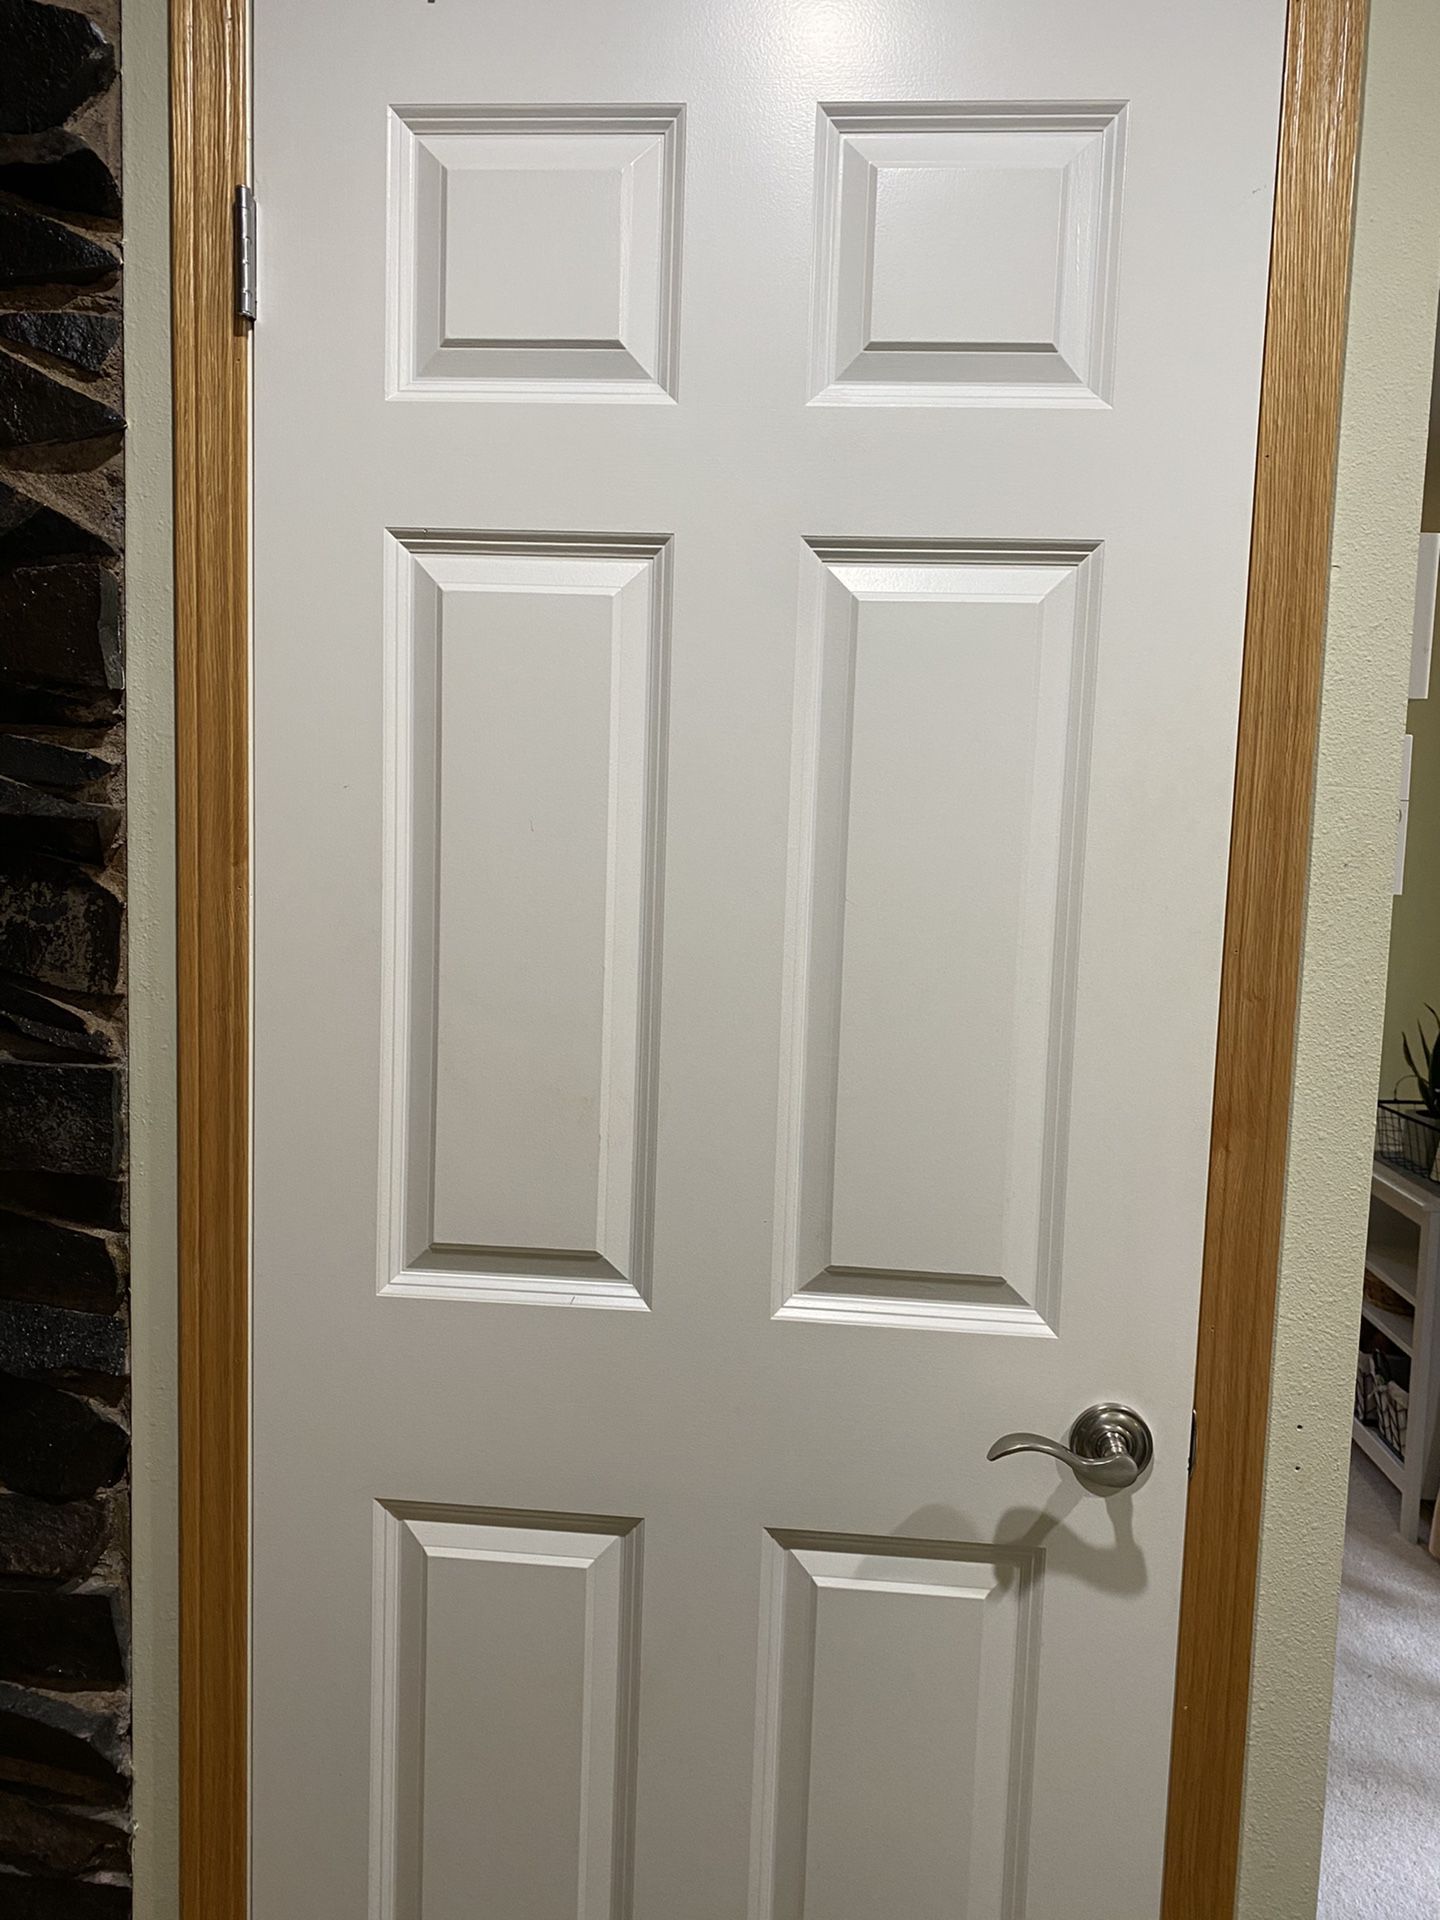 Painted Interior doors w/knobs, hinges